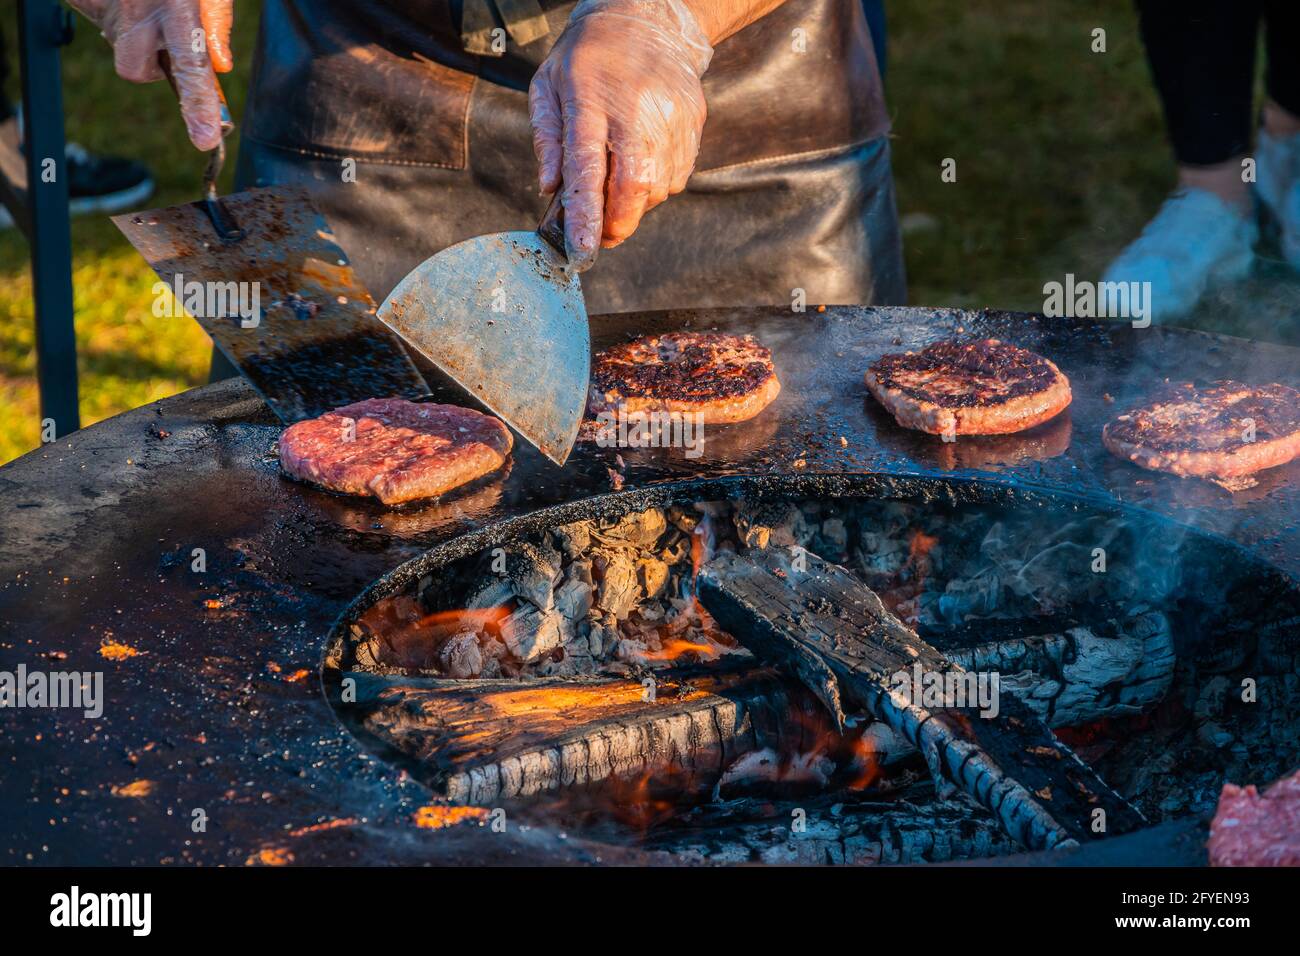 Auf dem Rasen röstet ein großer runder Holzgrill Rindersteaks für Burger.  Ein Koch in einer Lederschürze dreht die frittierten Schnitzel um. Grill f  Stockfotografie - Alamy